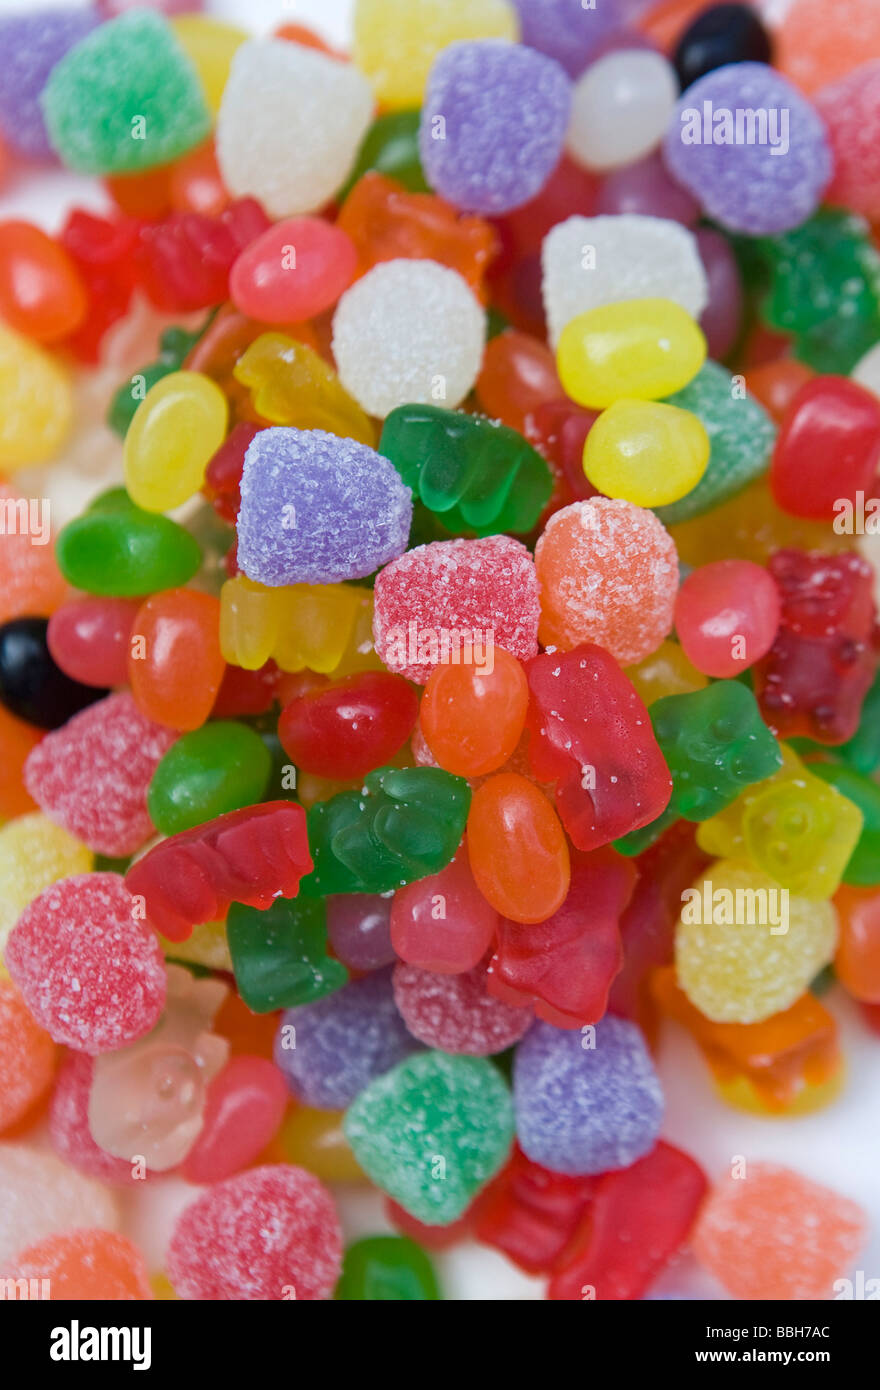 Orsi gommoso gocce di gomma Jelly Beans Candy la vendita negli Stati Uniti è rimasta forte nonostante un attraverso la scheda aumento del prezzo o Foto Stock